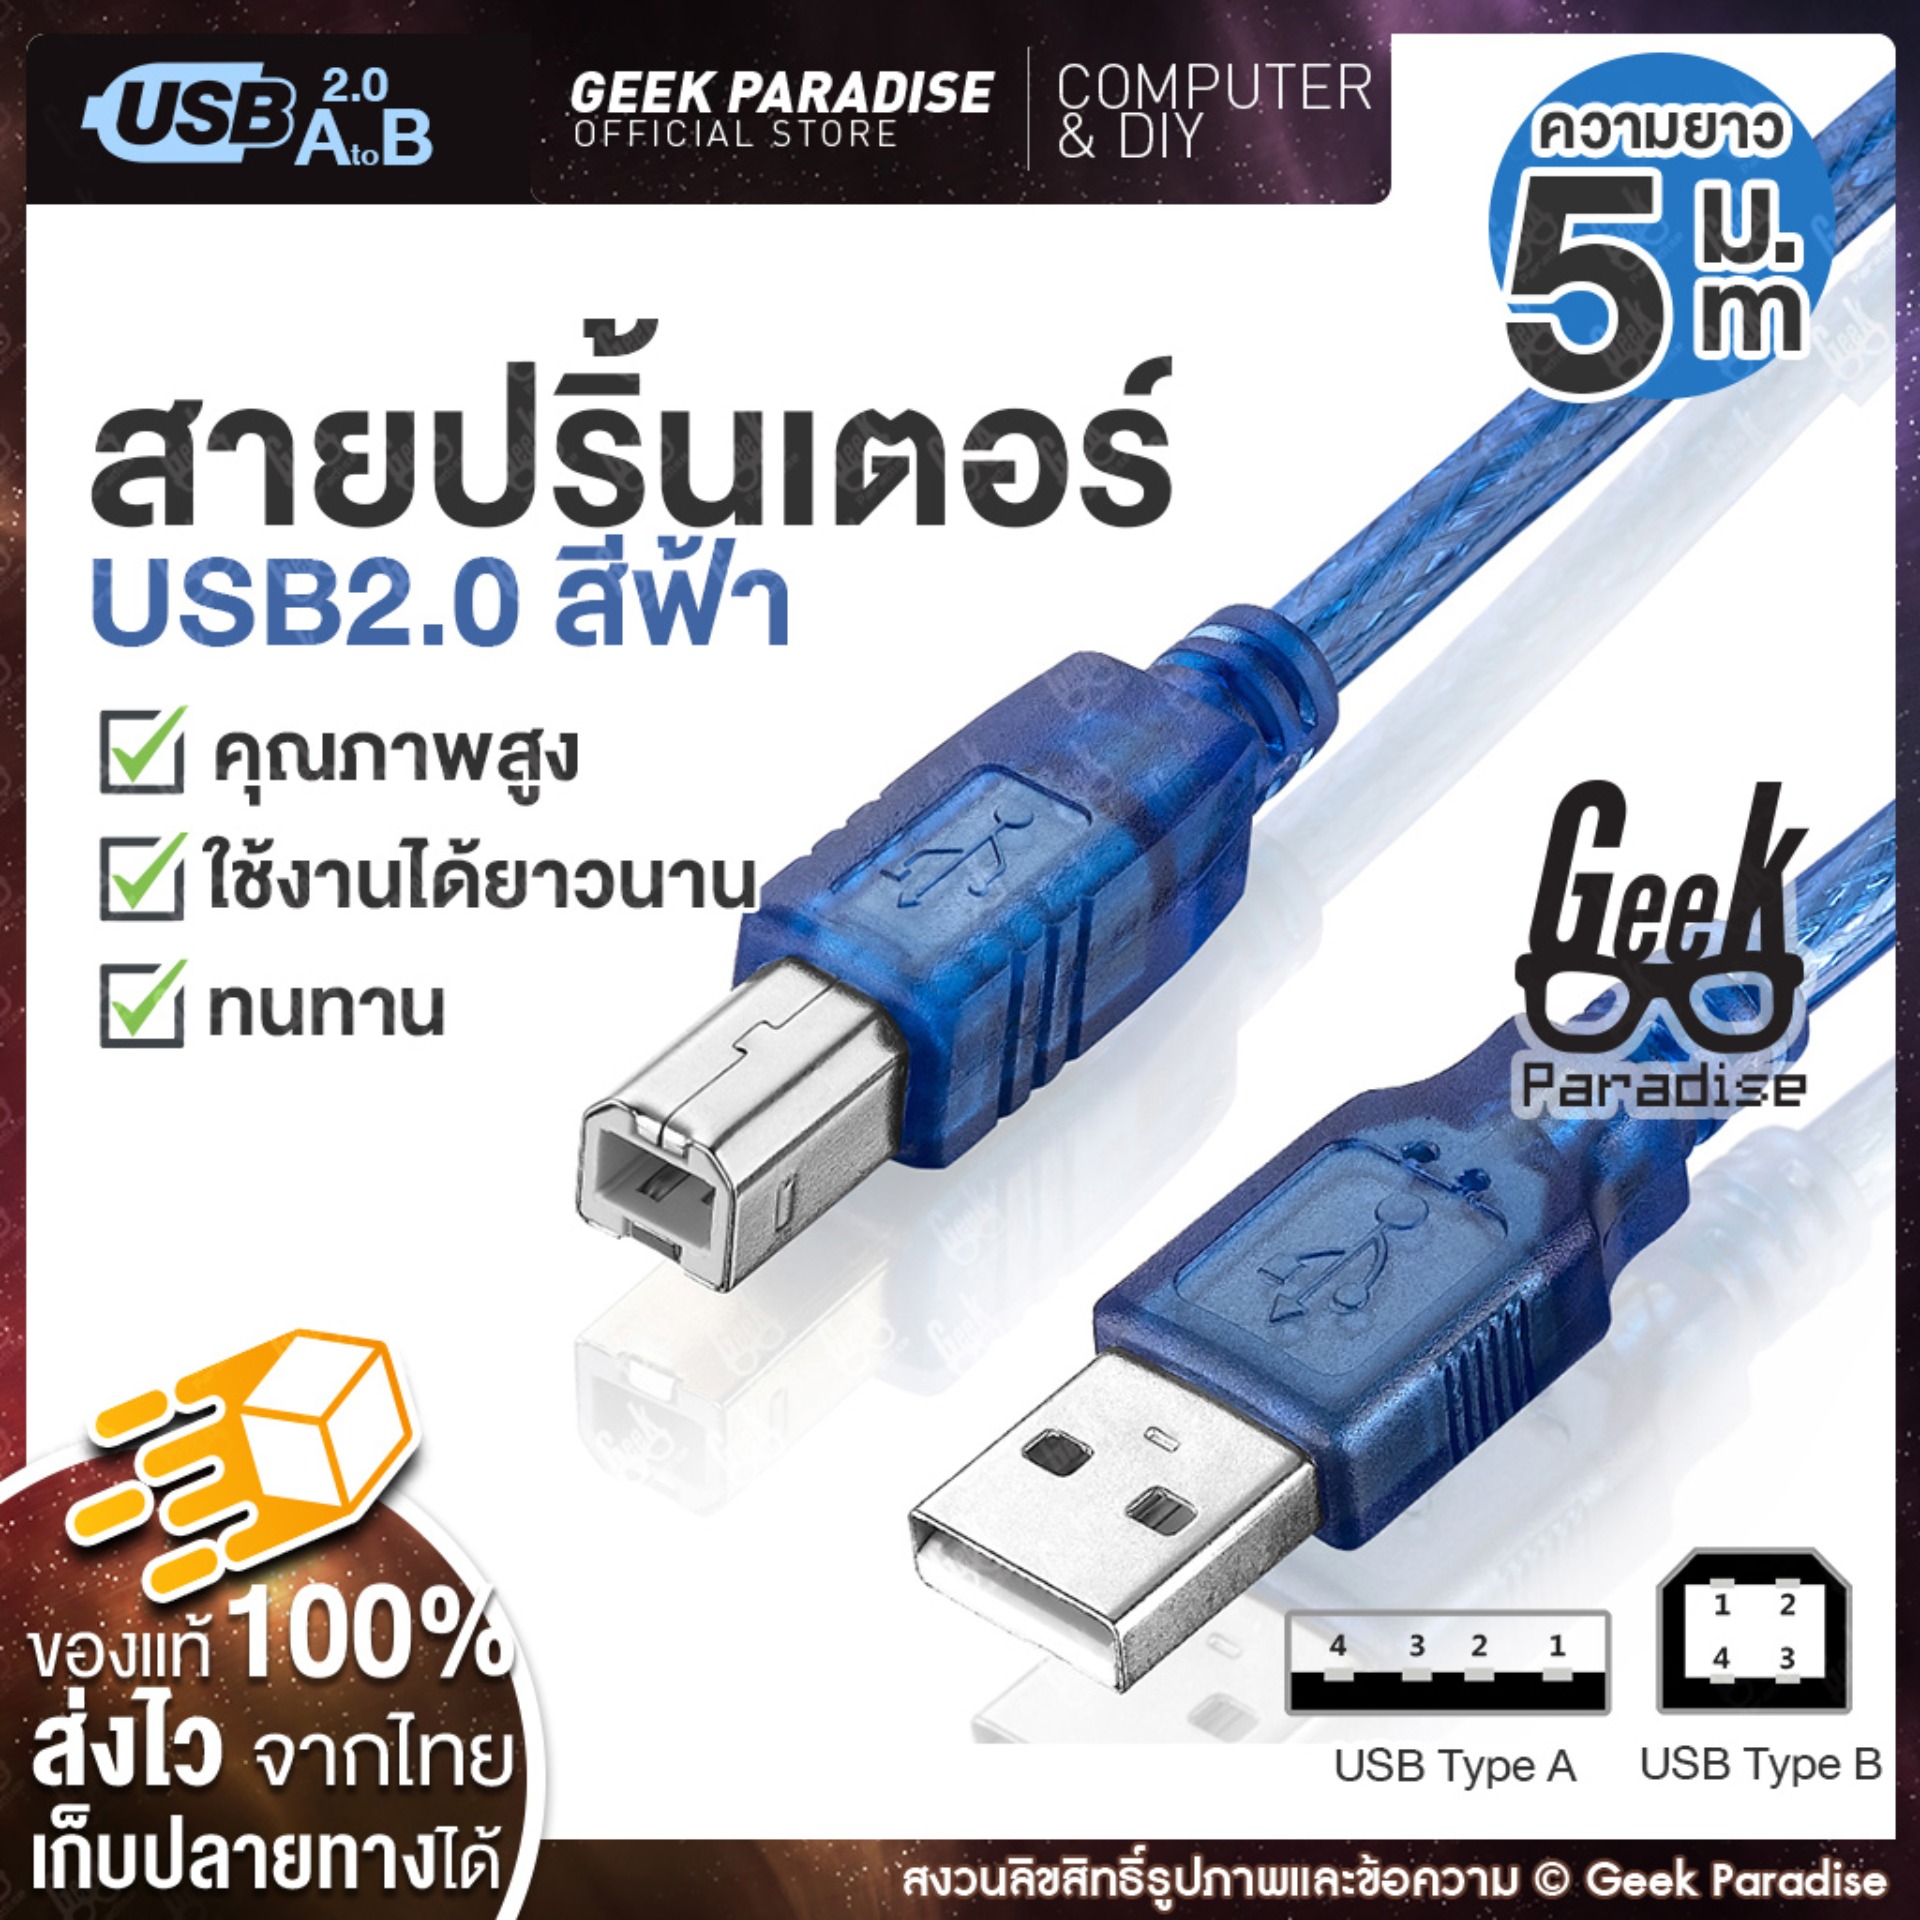 ใหม่ สินค้าขายดี! Geek Paradise สาย USB Printer 5 เมตร สำหรับเครื่องปริ้นเตอร์, สแกนเนอร์ ความเร็วสูง แบบพอร์ต  Type A Male To B Male สายปริ้นเตอร์เกรด A คุณภาพสูง พร้อมวงจรป้องกันไฟฟ้าสถิต